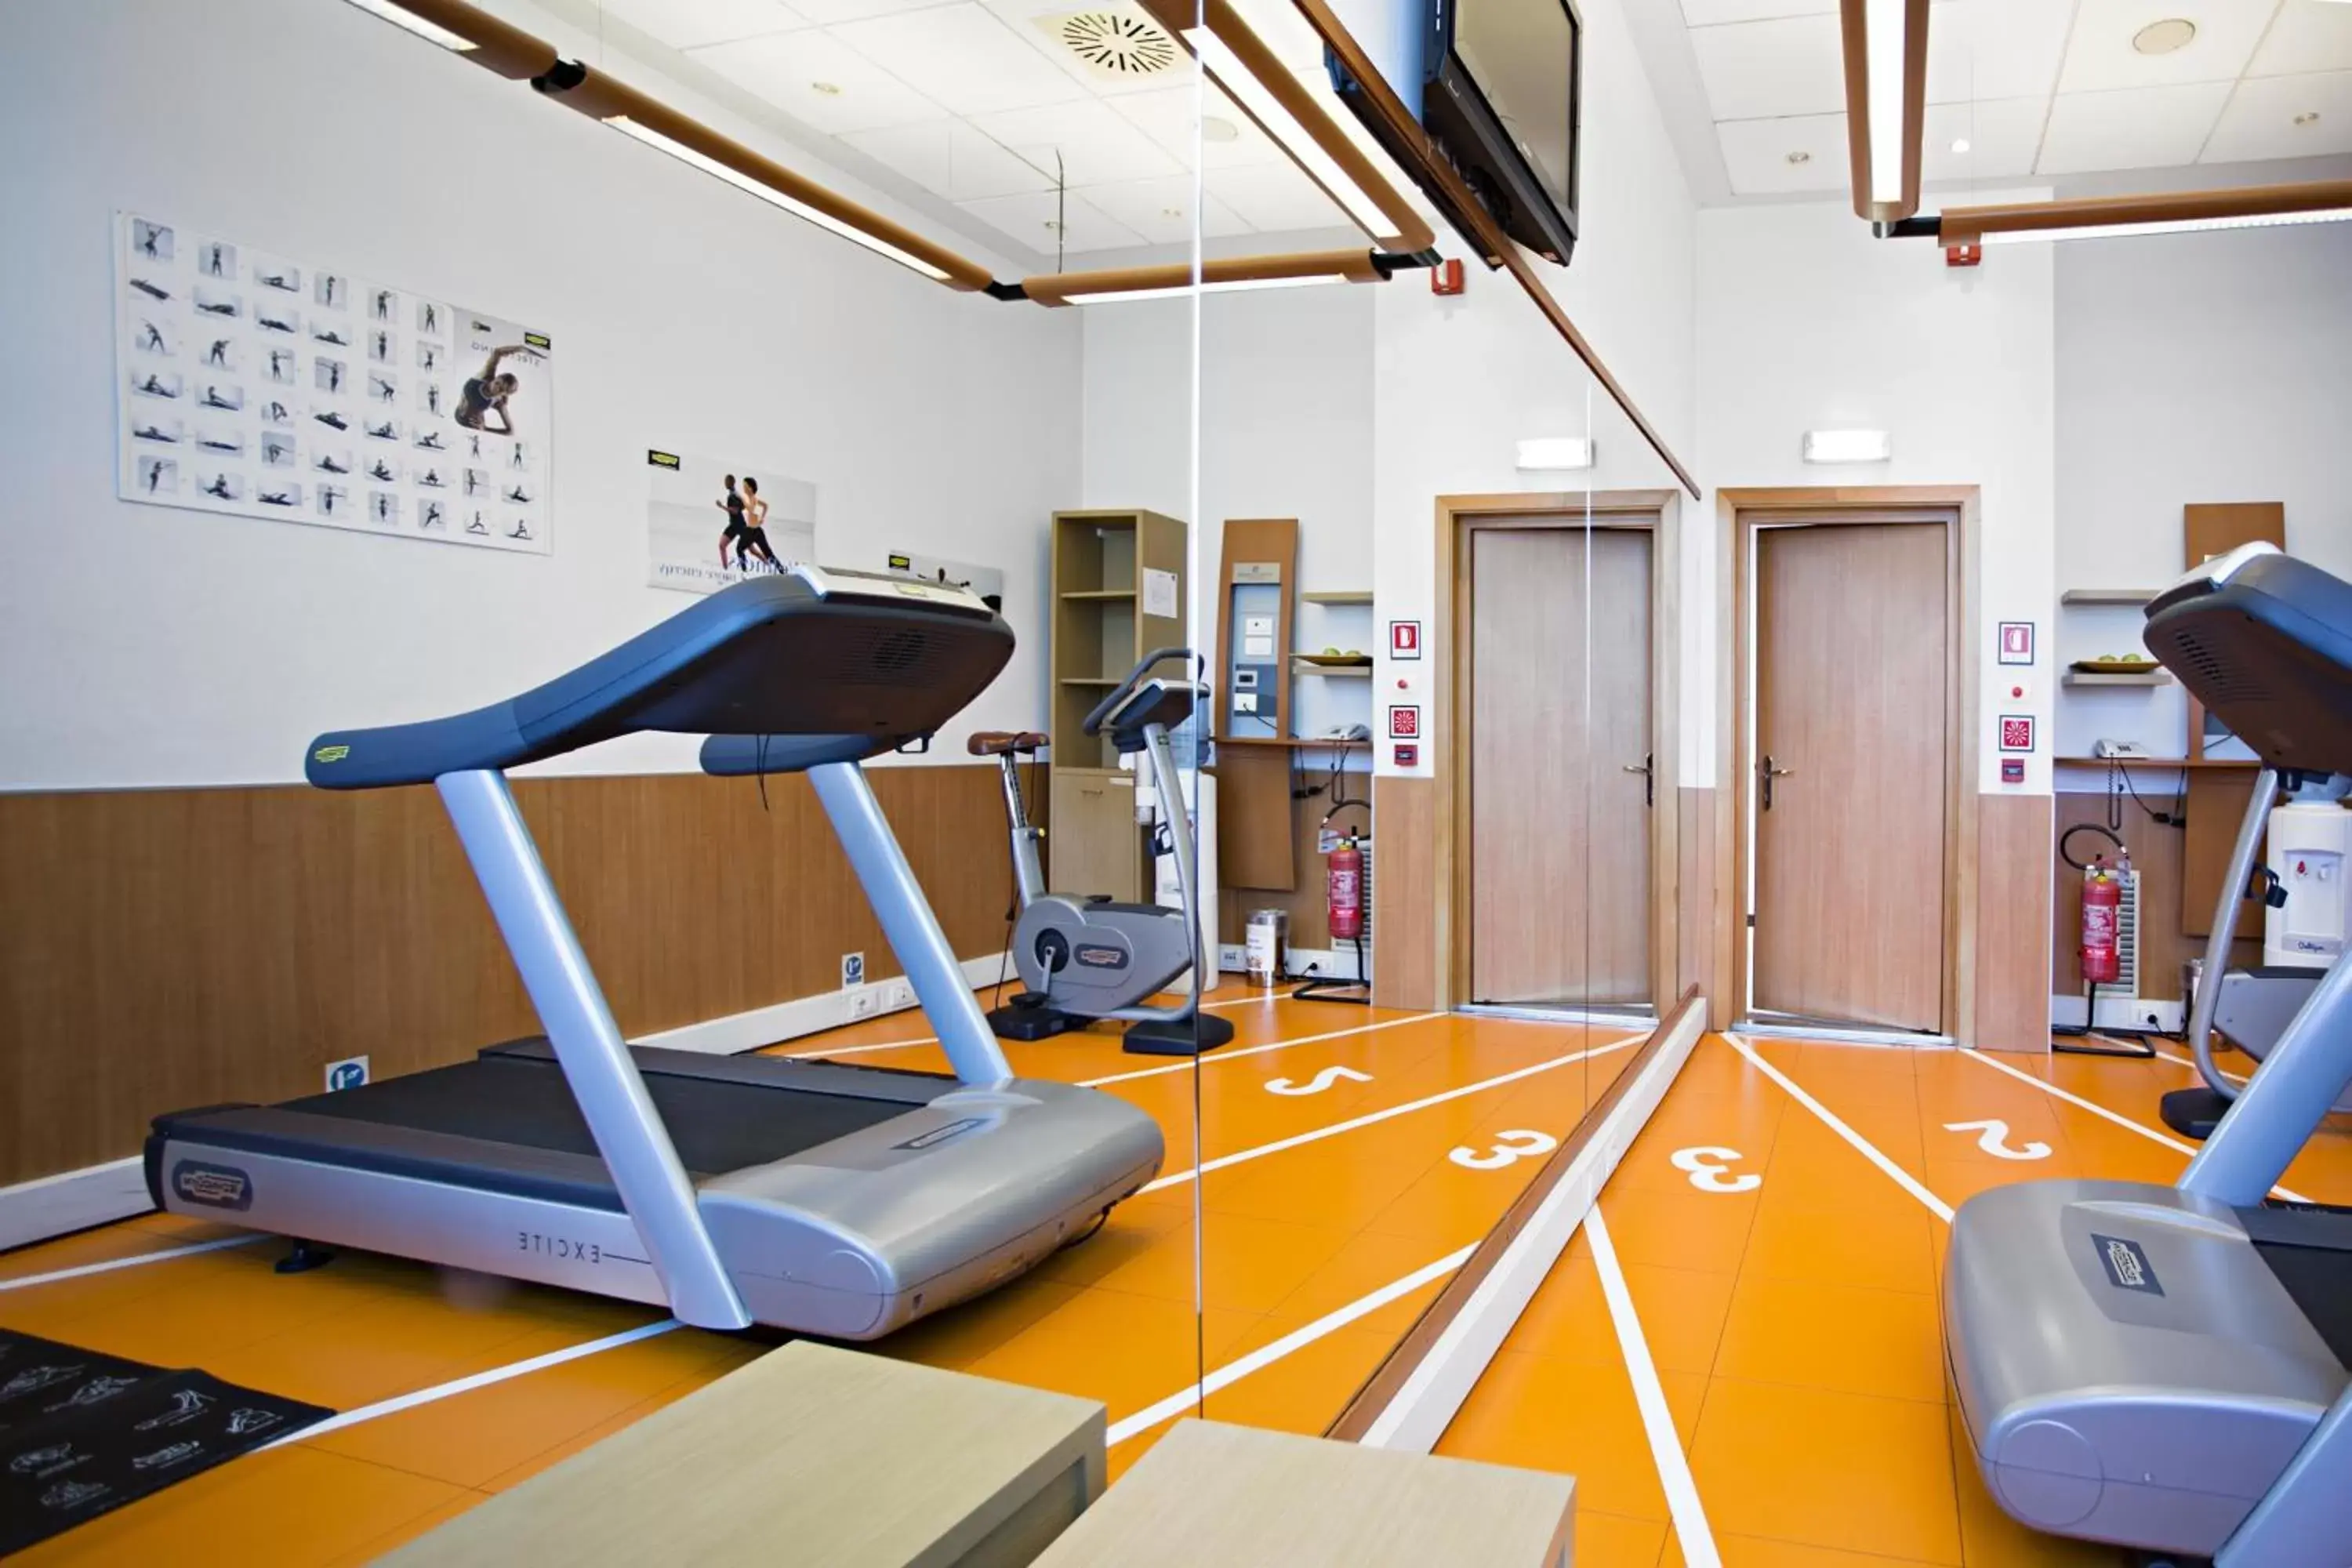 Fitness centre/facilities, Fitness Center/Facilities in Novotel Torino Corso Giulio Cesare